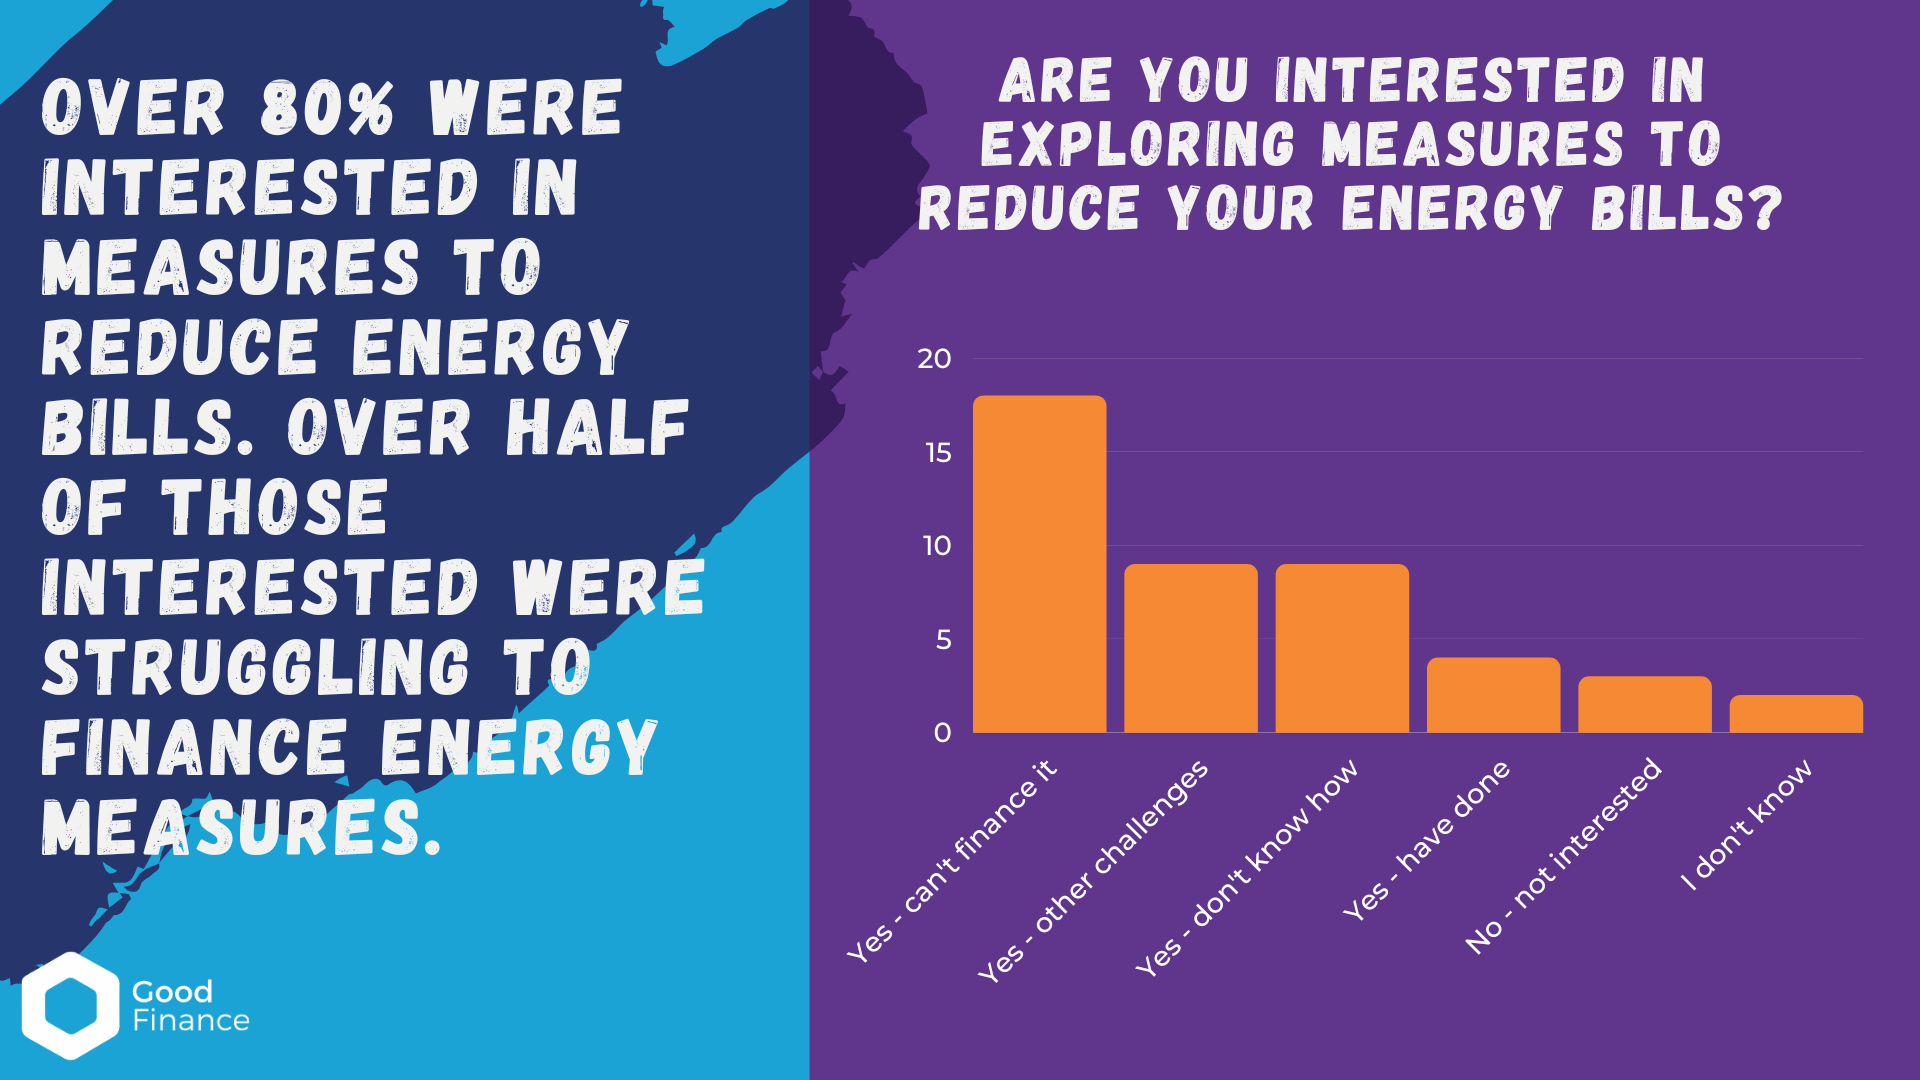 Interest in reducing energy bills 